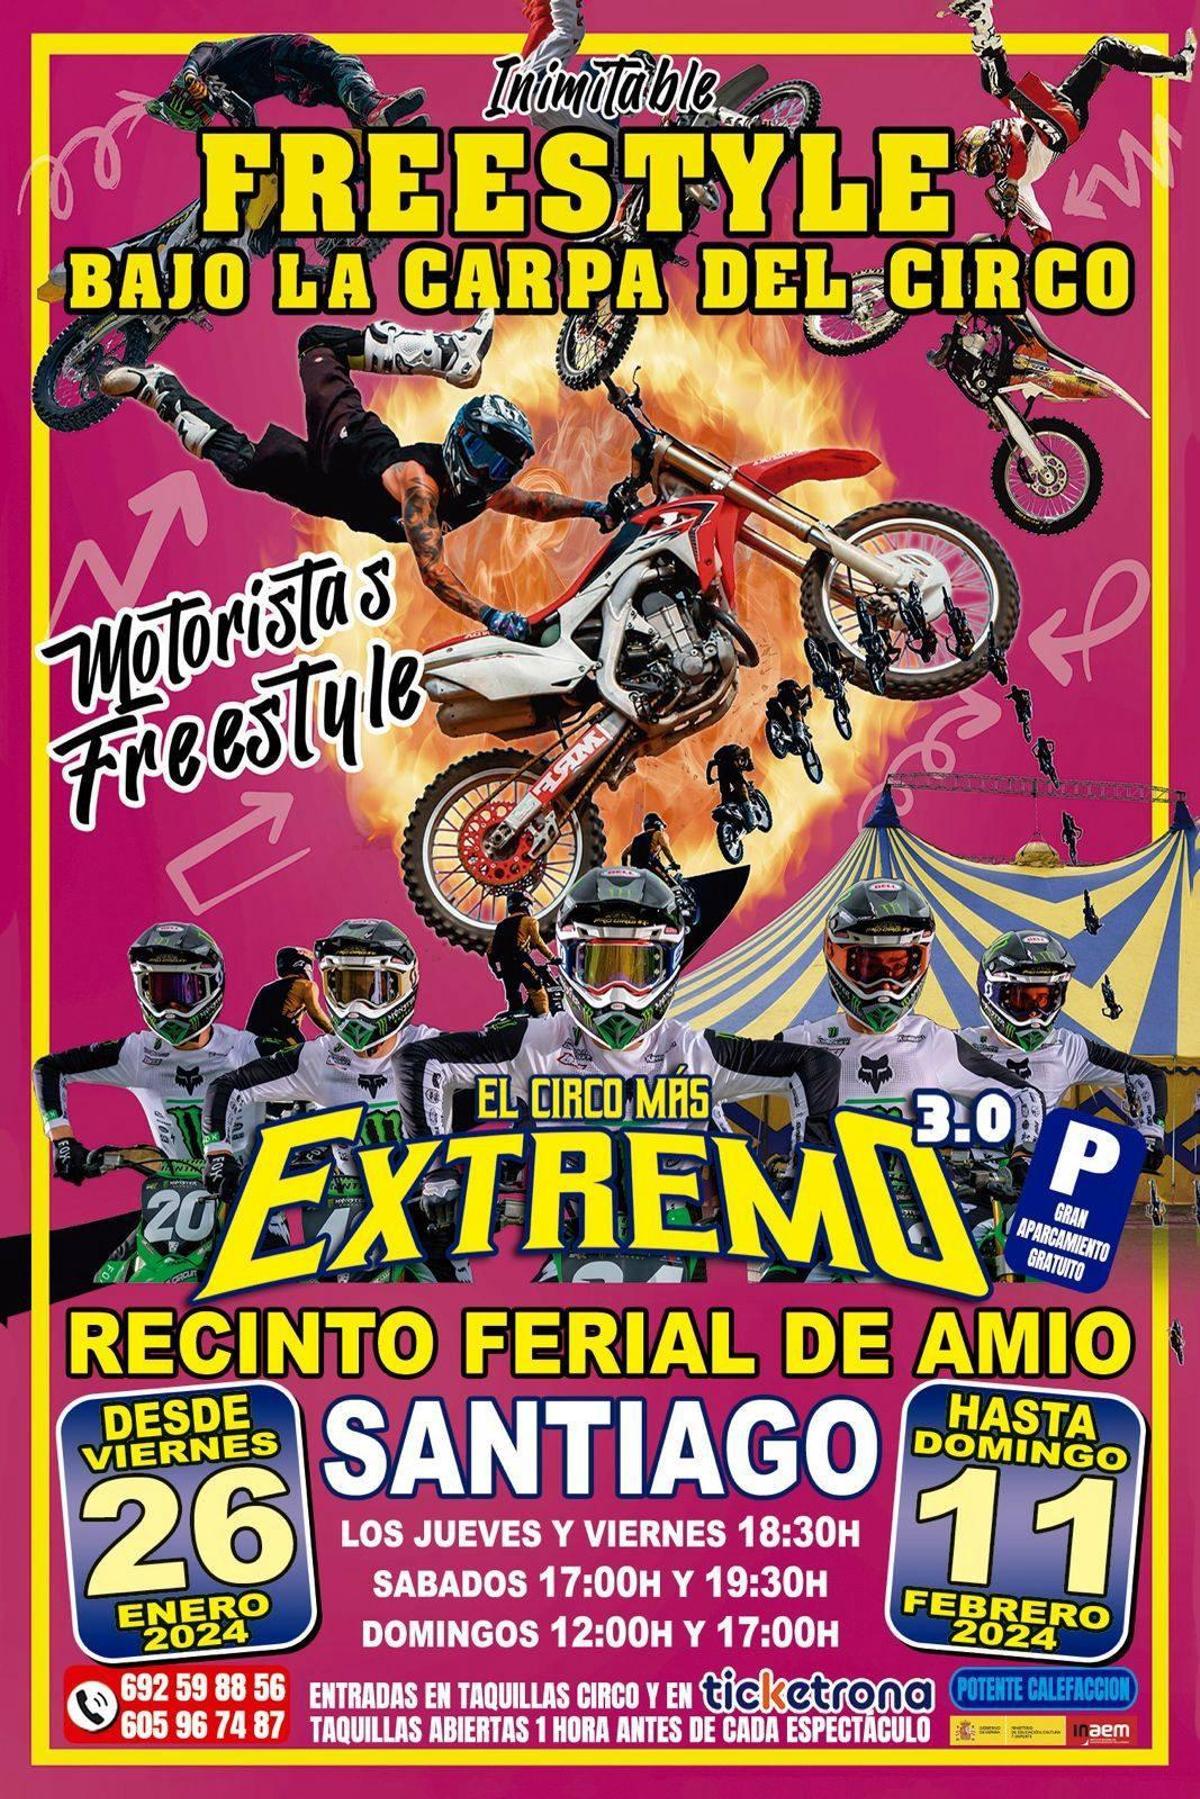 El Circo Inimitable trae a Santiago su espectáculo de freestyle motocross bajo la carpa